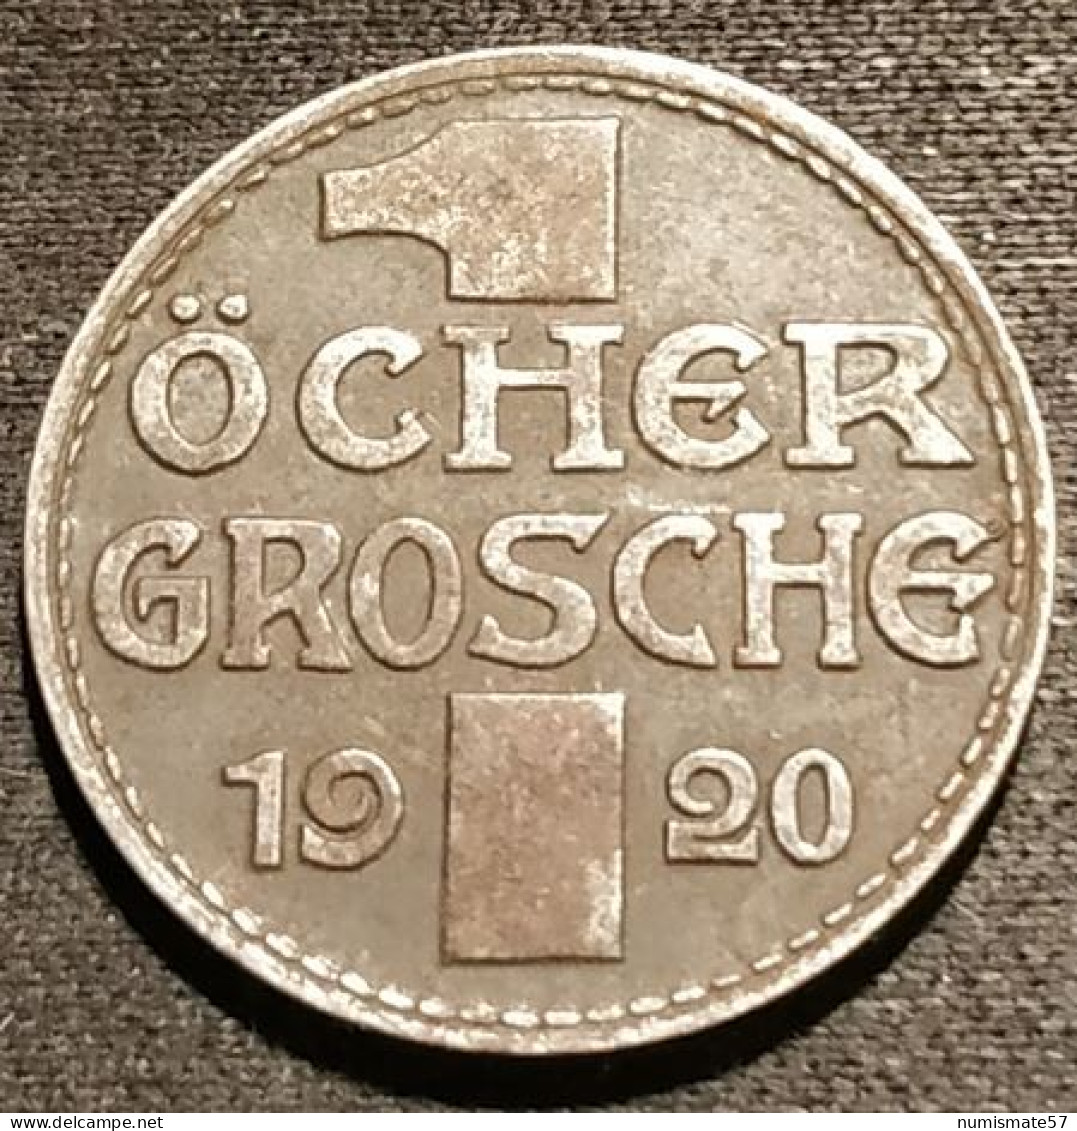 ALLEMAGNE - GERMANY - 1 Öcher Grosche 1920 - ( 10 Pfennig Aachen ) - Funck# 1.5 - Monedas/ De Necesidad